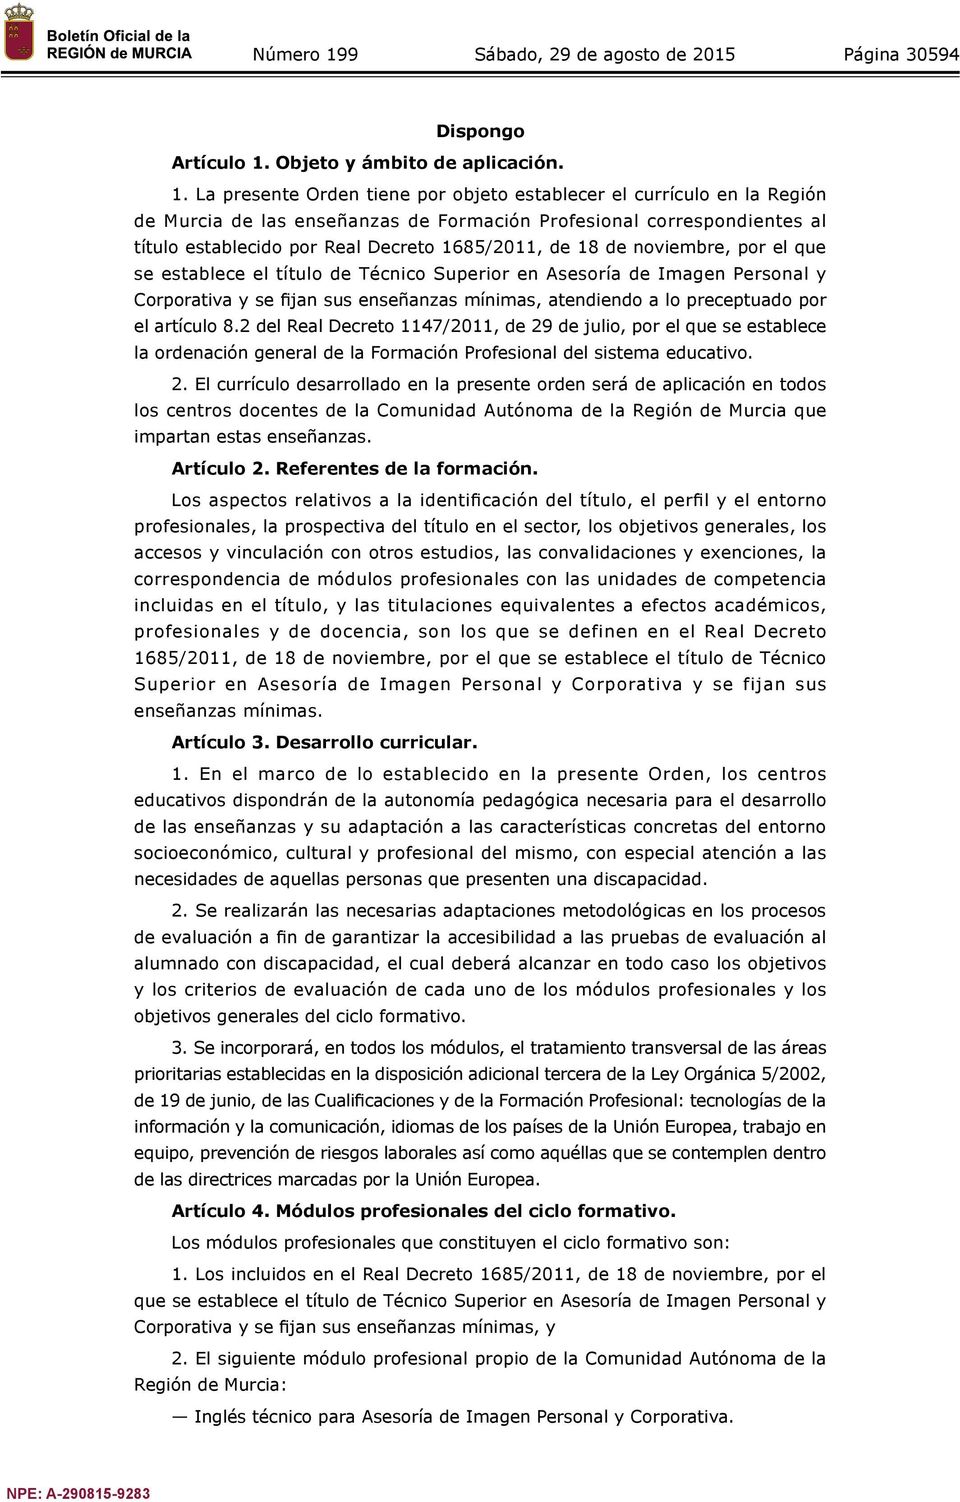 La presente Orden tiene por objeto establecer el currículo en la Región de Murcia de las enseñanzas de Formación Profesional correspondientes al título establecido por Real Decreto 1685/2011, de 18